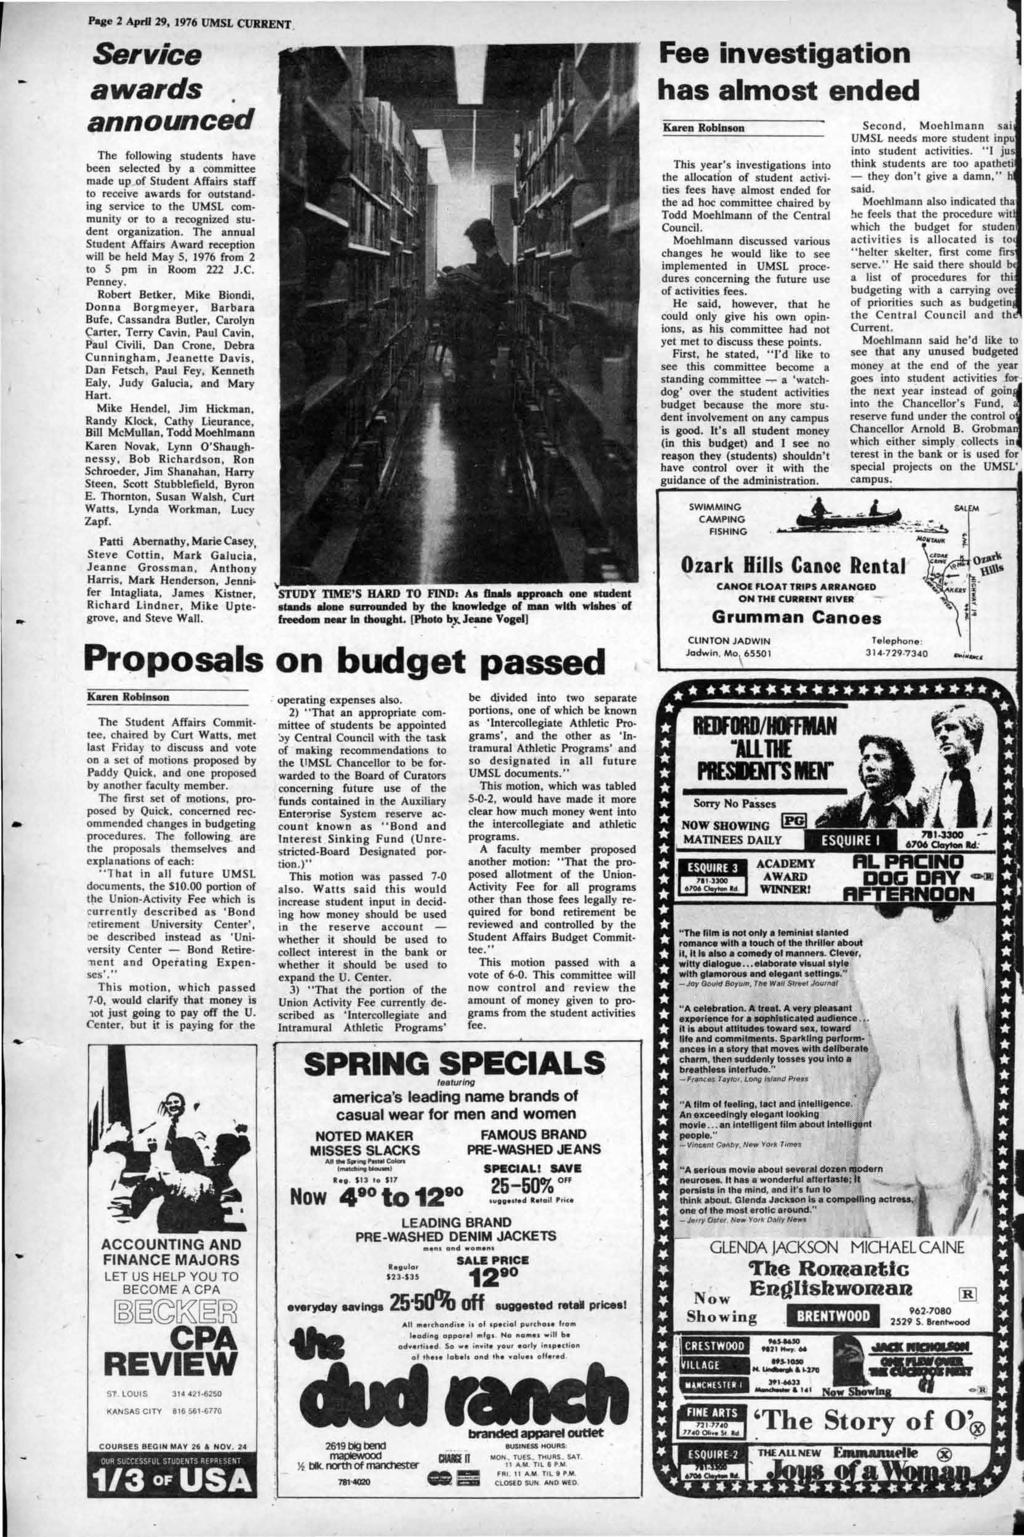 - Page 2 AprfJ 29, 1976 UMSL CURRENT.